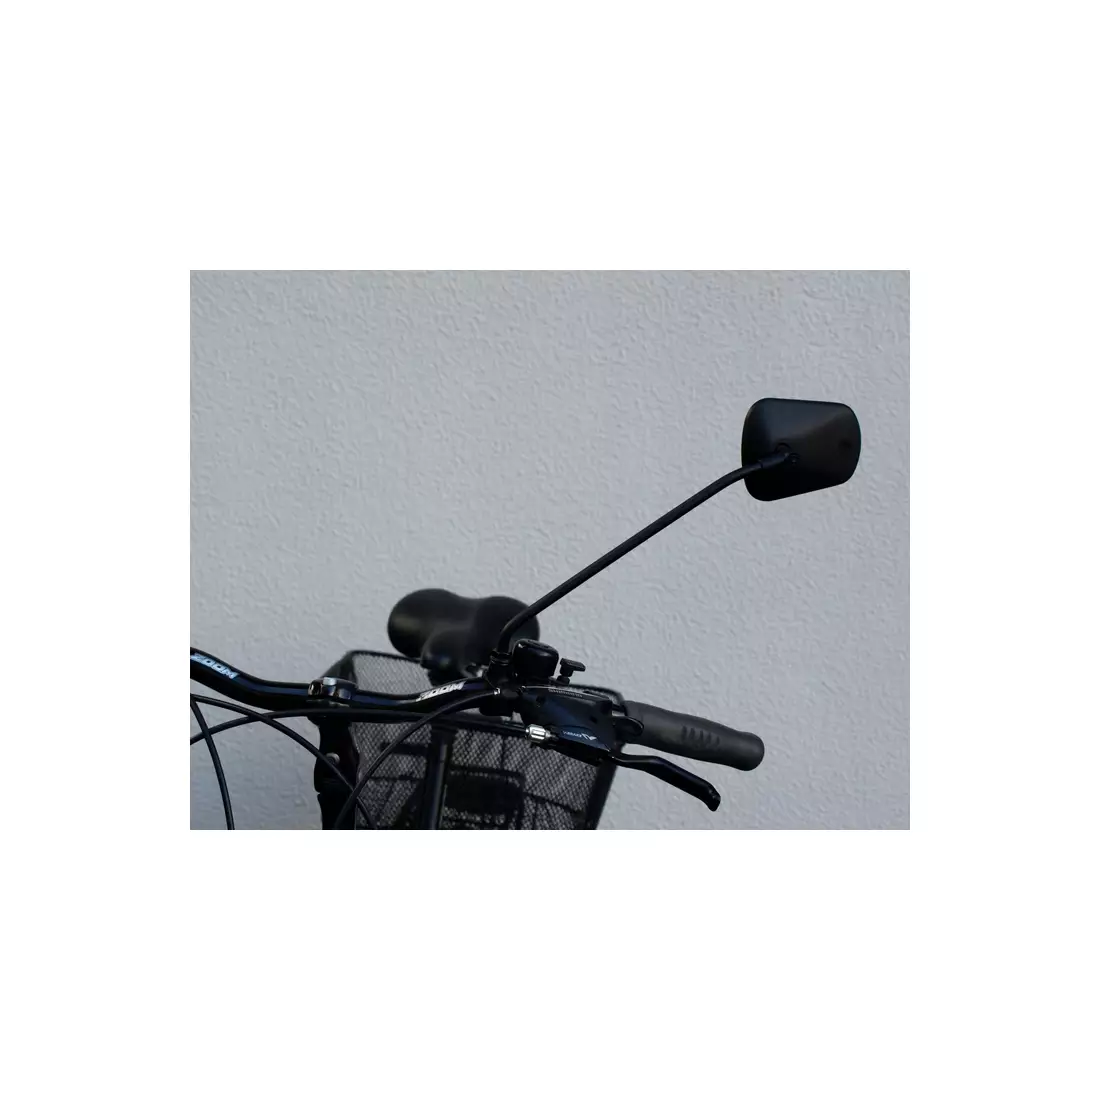 AJS PLUS bicikli tükör kormányrögzítővel, fekete